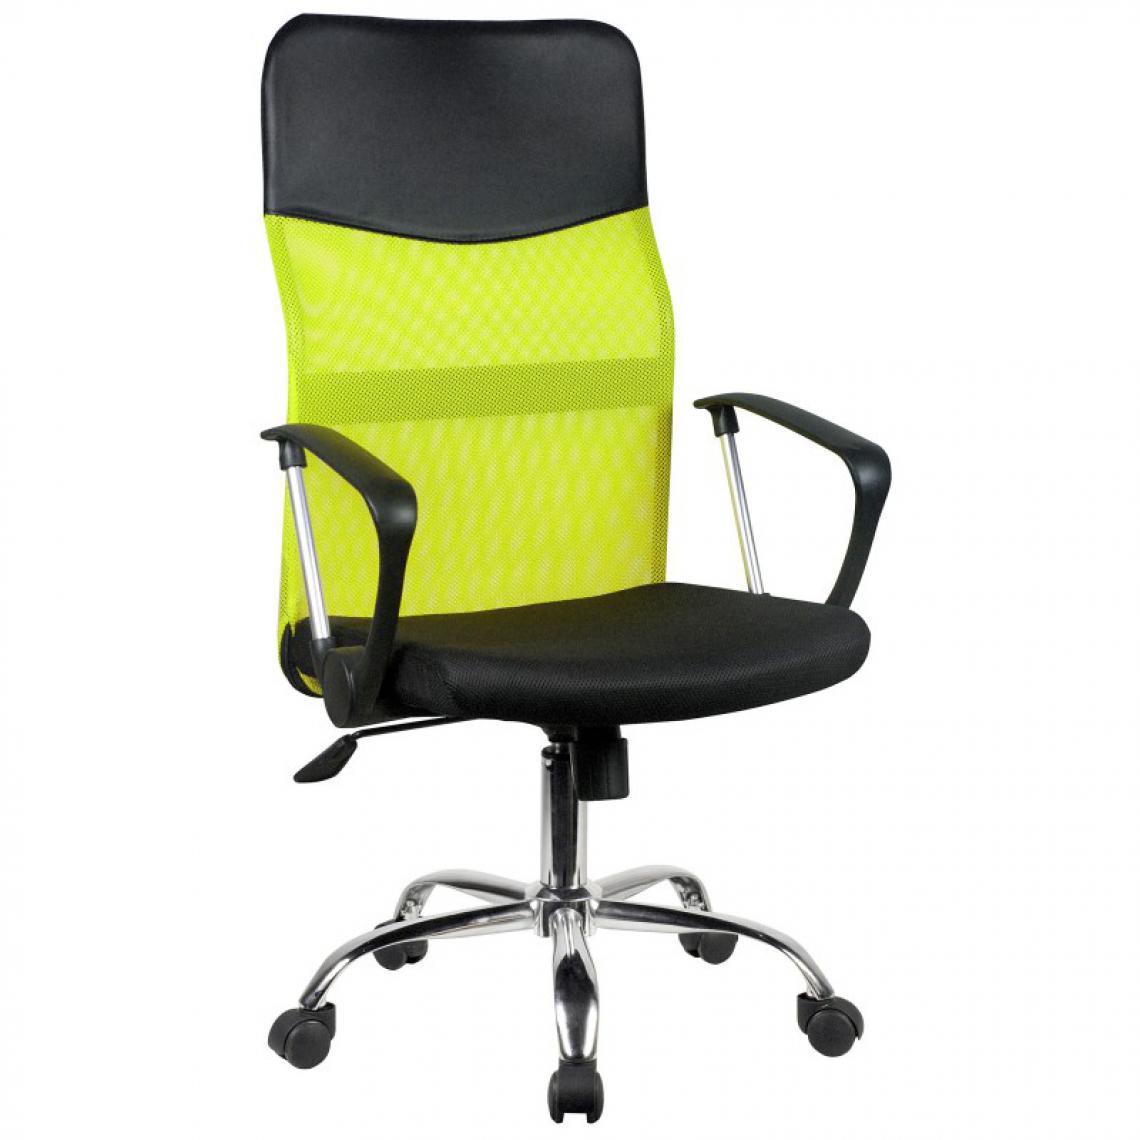 Hucoco - TANJE - Chaise de bureau pivotante - Hauteur ajustable 105-115cm - Fauteuil pivotant - Dossier ergonomique en Mesh - Vert - Chaises